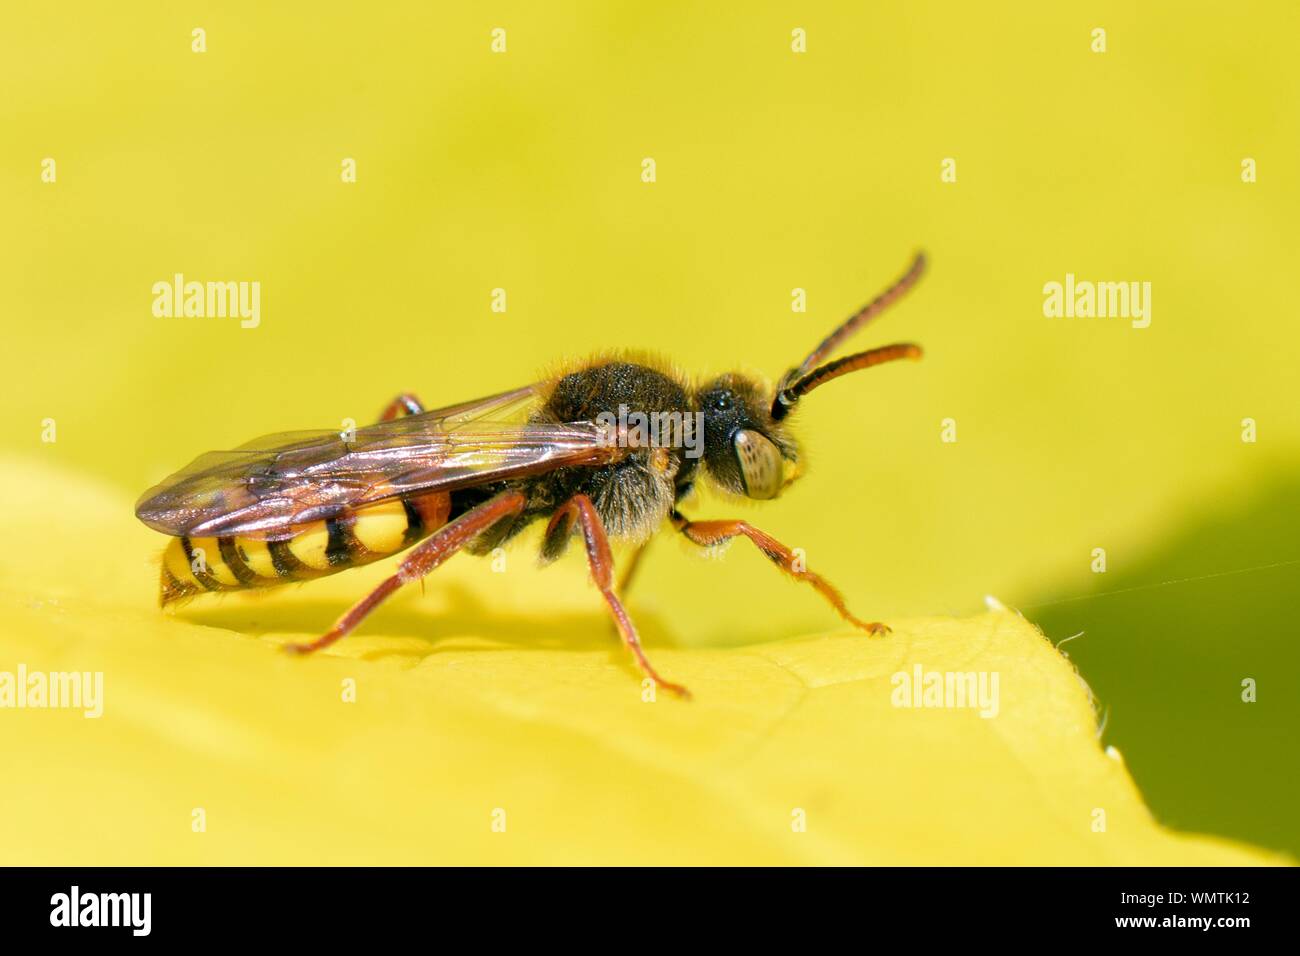 Nomad Bee (Nomada sp,) ein Kuckuck biene Parasit der solitären Bienen, Sonnen auf einem Cornus alba 'Sibirica Blatt, Wiltshire, UK, April. Stockfoto